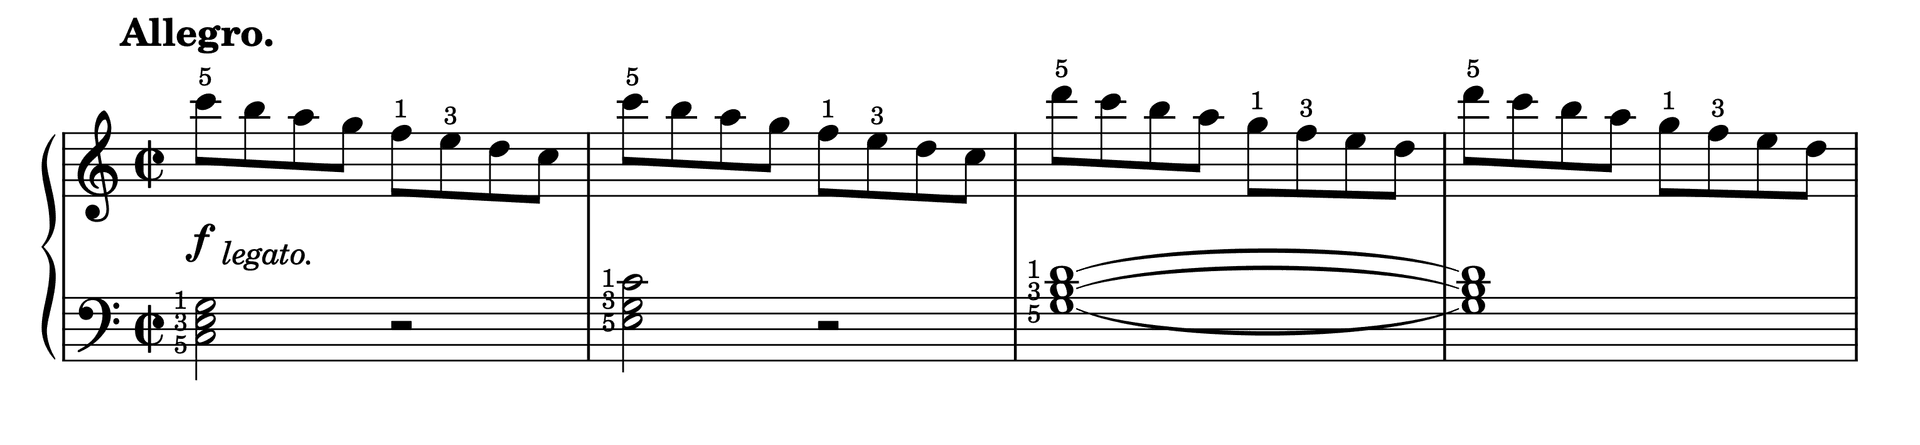 Excerpt of Etude in C Major Op. 37, No. 1